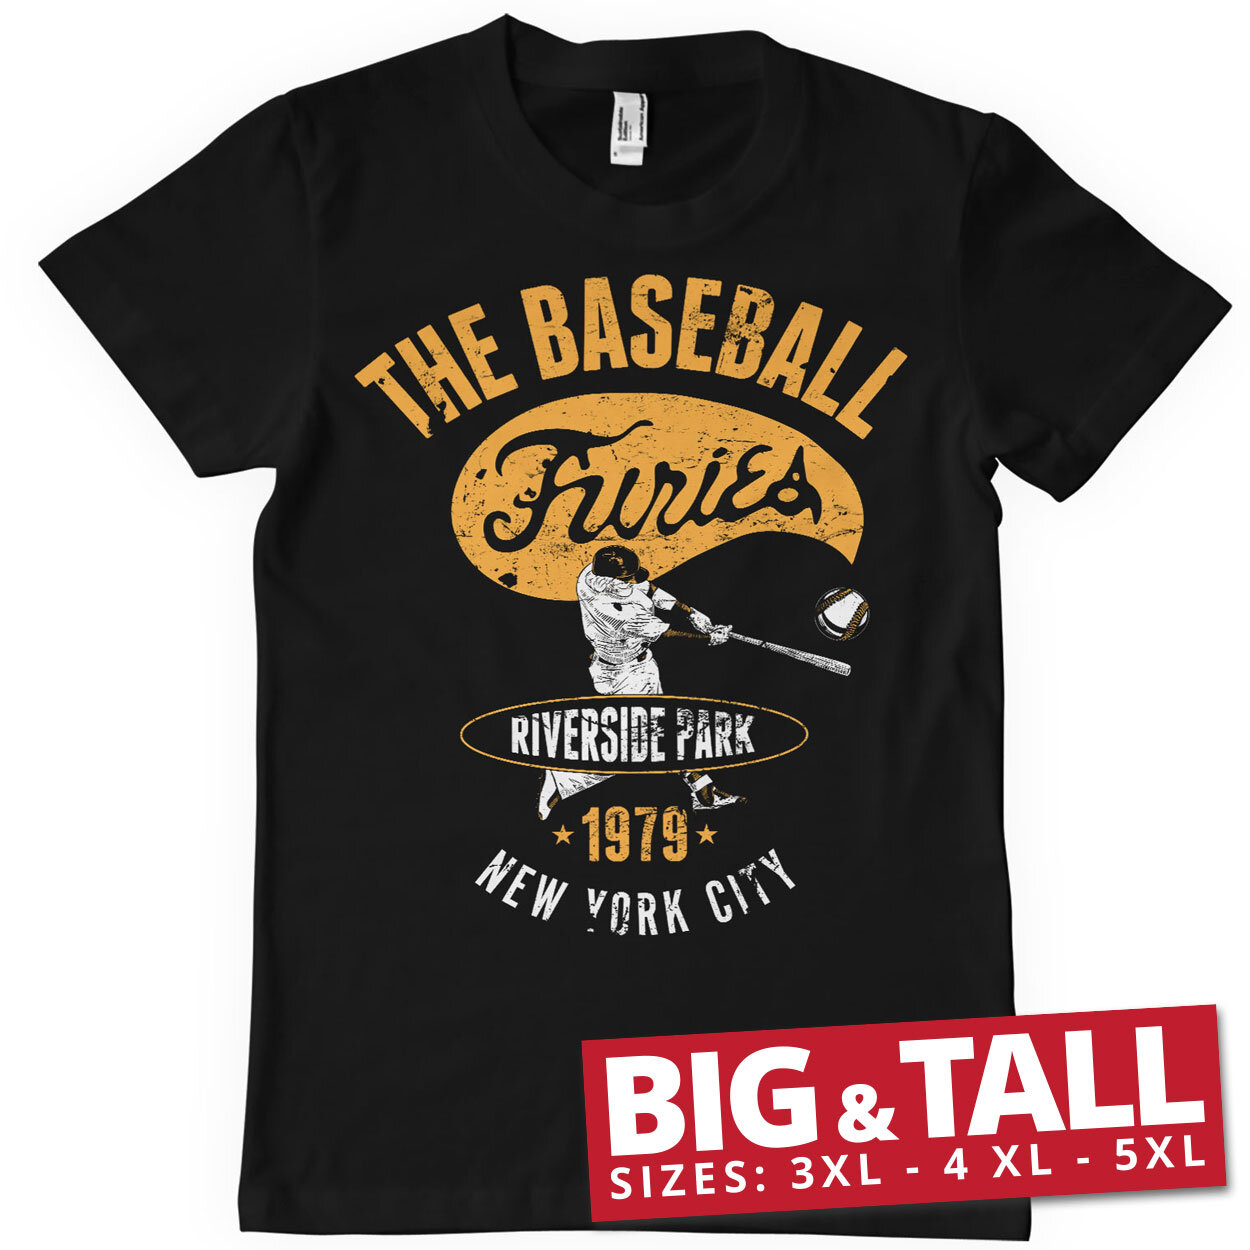 Furies - Riverside Park Big & Tall T-Shirt